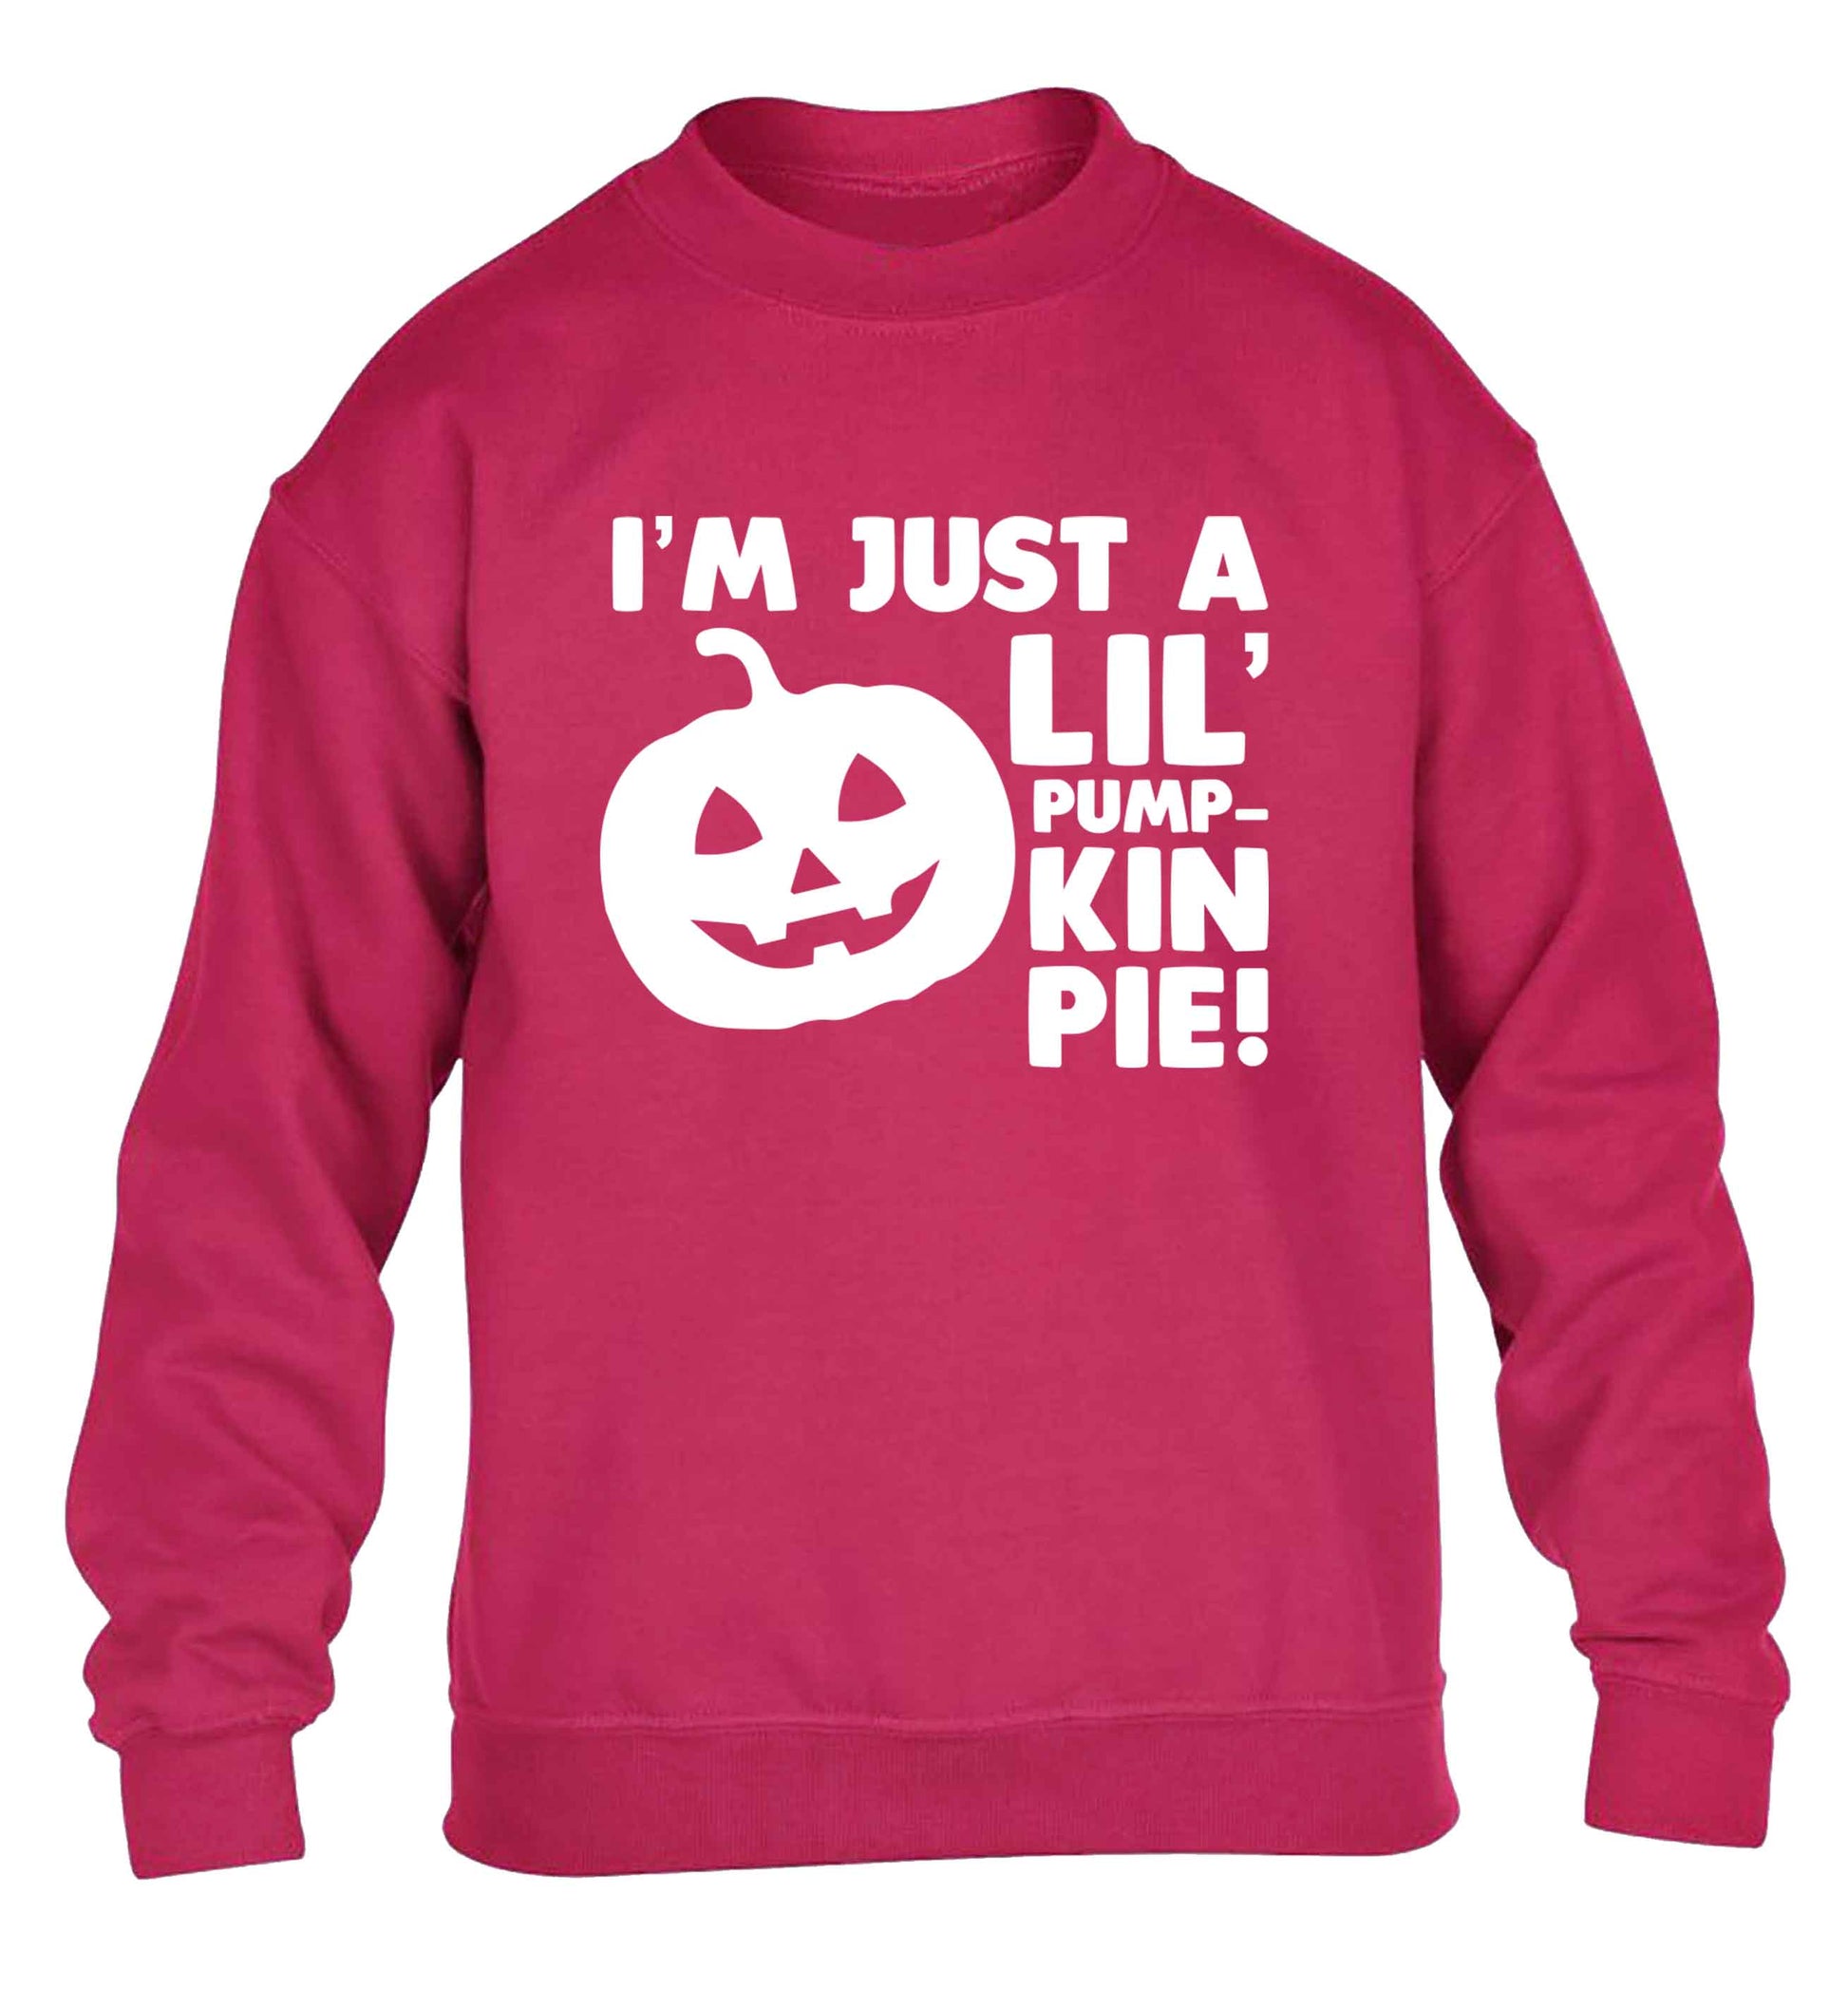 I'm just a lil' pumpkin pie children's pink sweater 12-13 Years